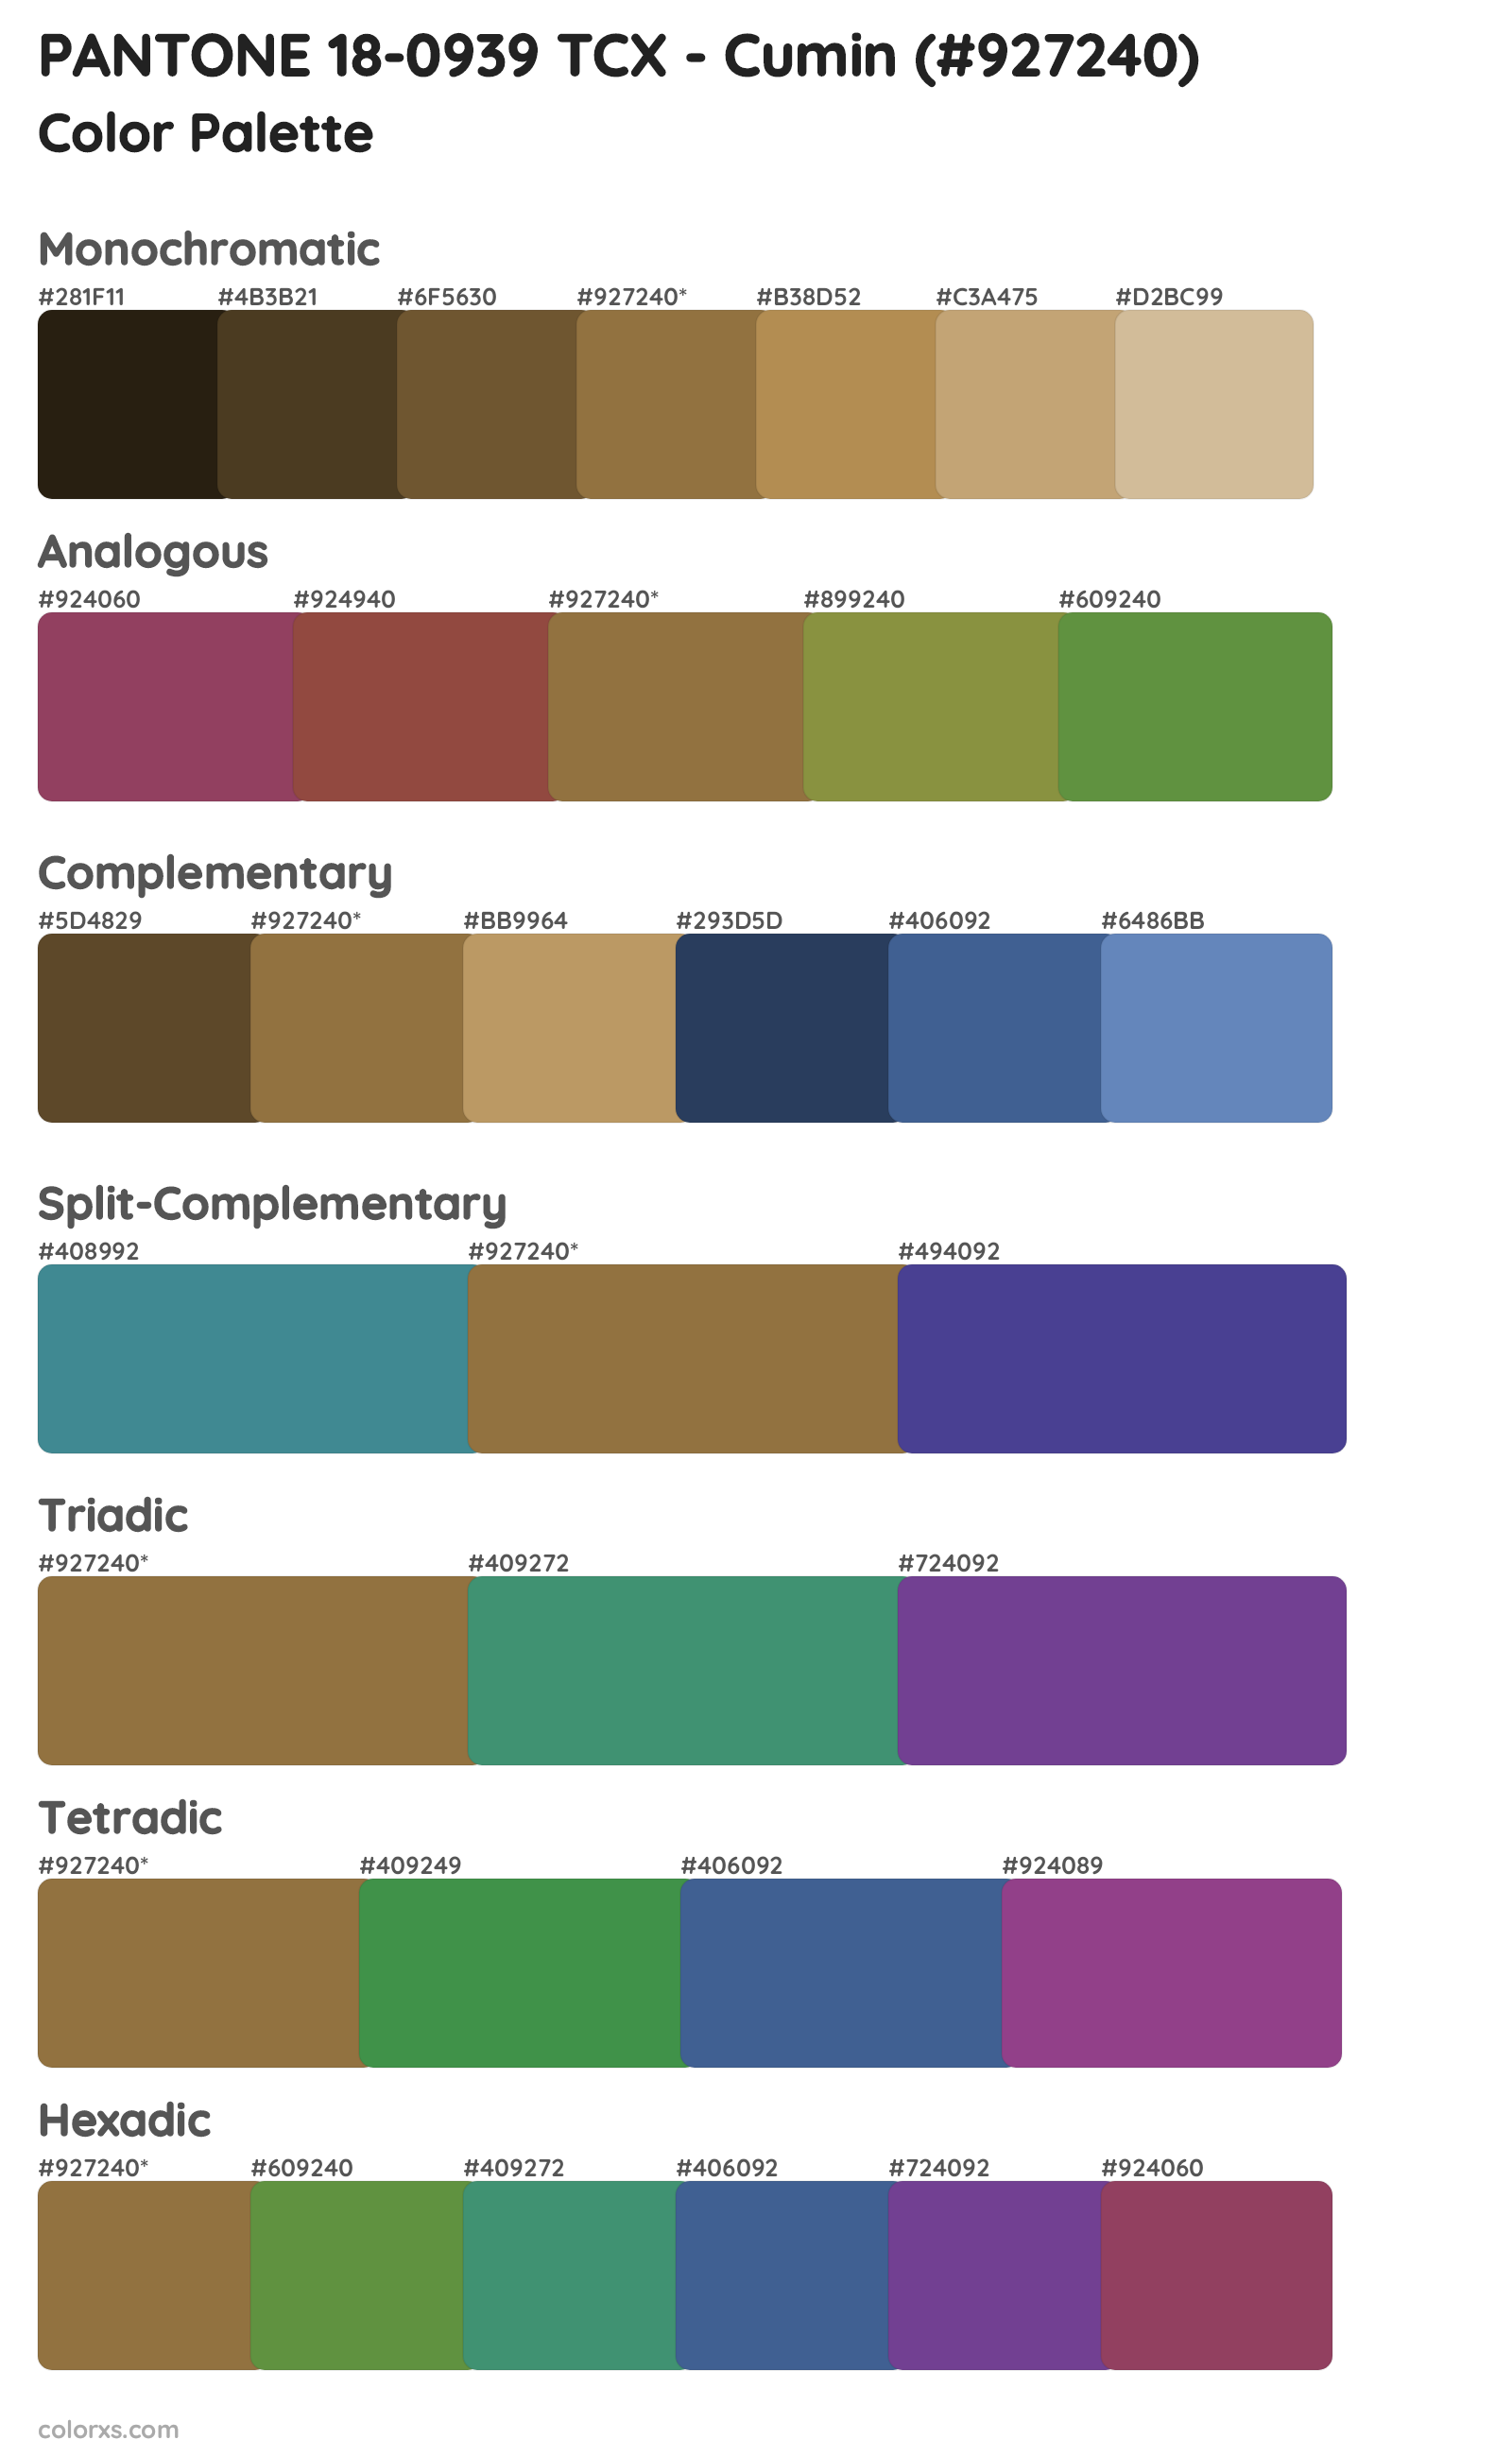 PANTONE 18-0939 TCX - Cumin Color Scheme Palettes